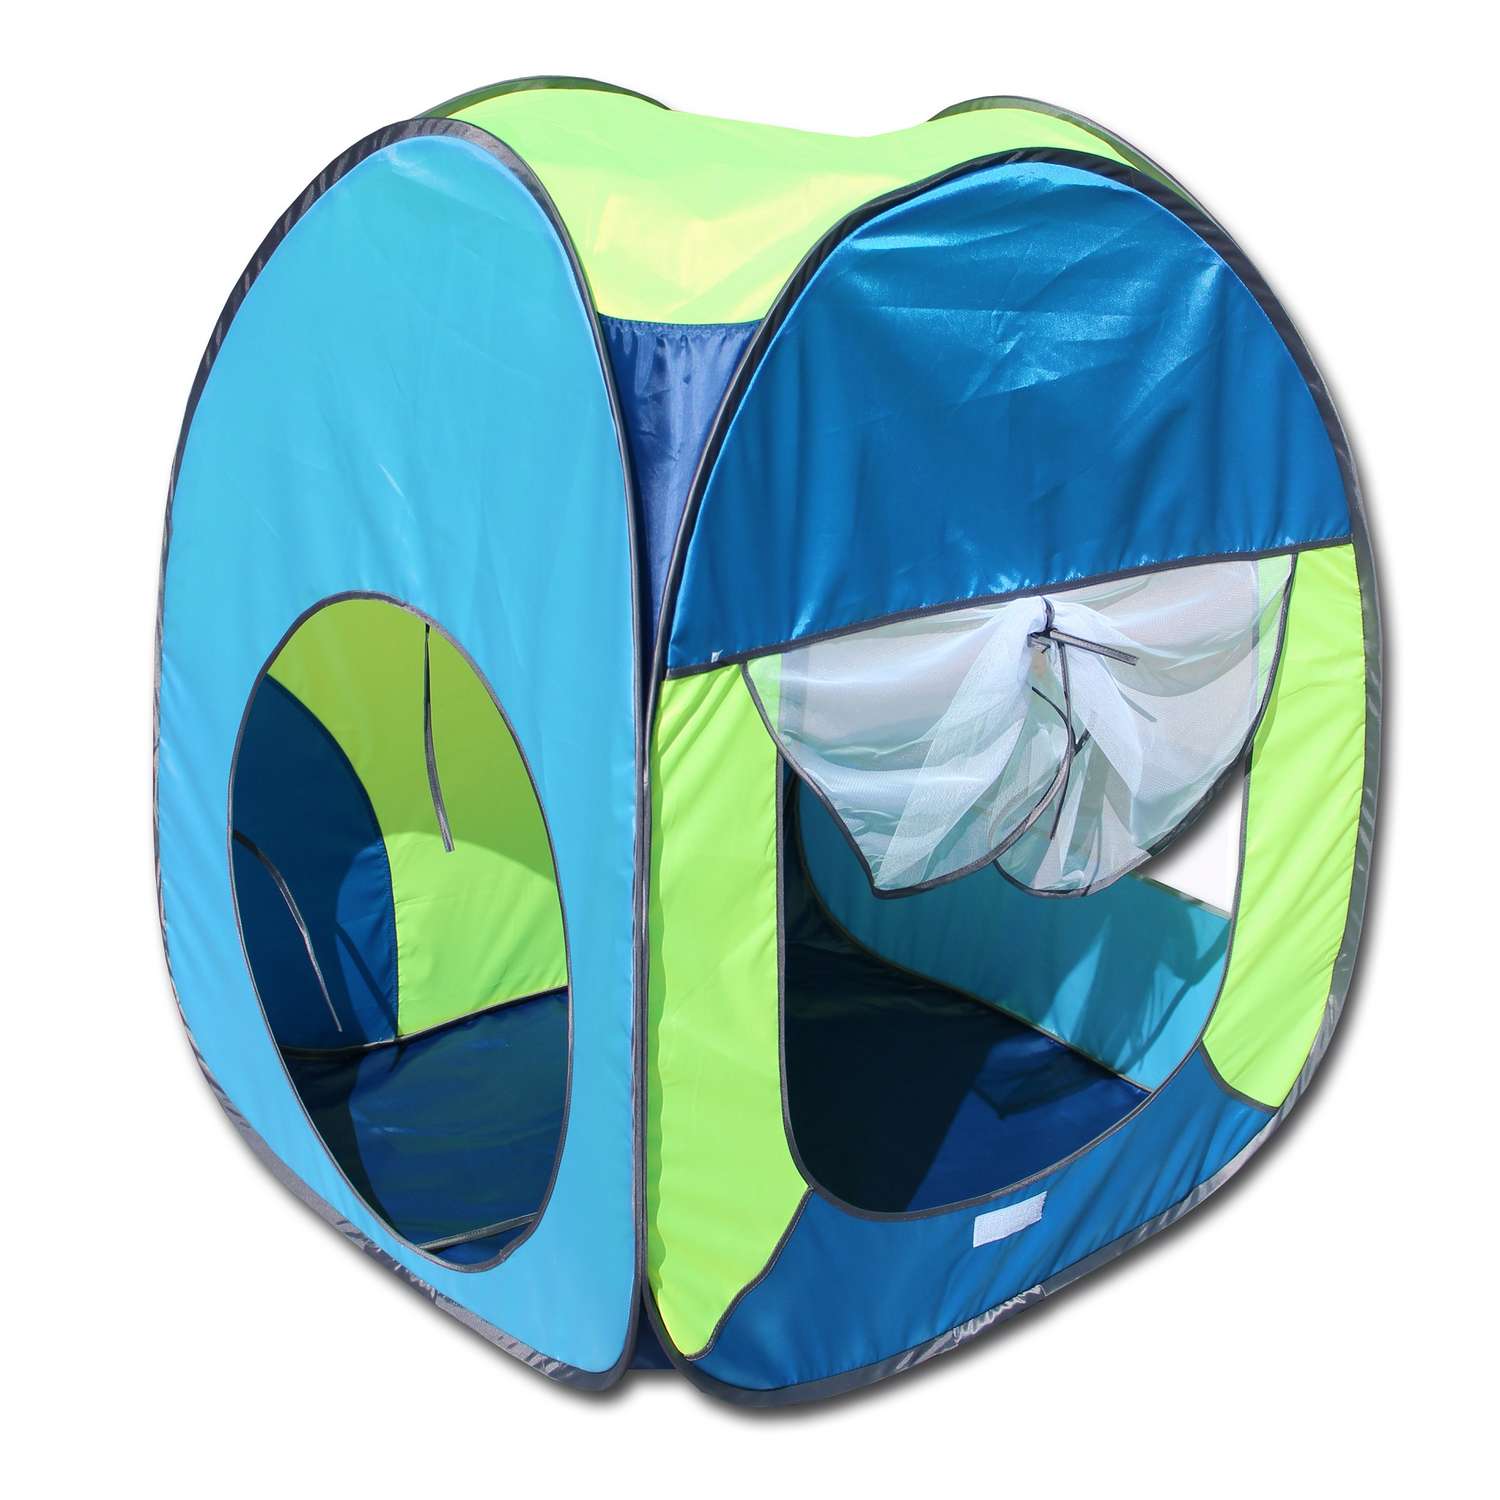 Палатка игровая Belon familia Волшебный домик цвет темный синий/василековый/лимон/голубой Размеры 75х75х90 см - фото 1